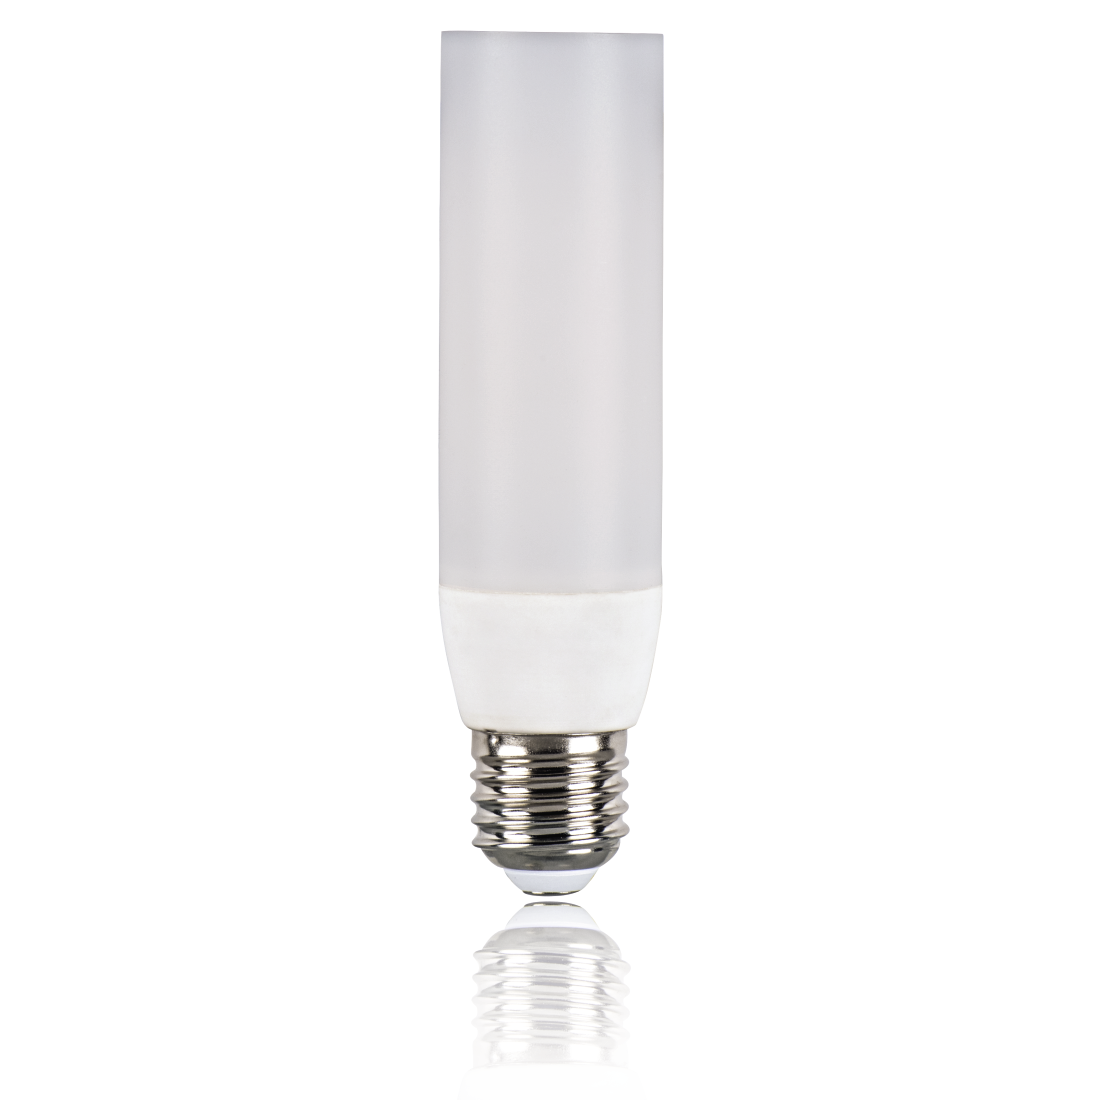 abx2 High-Res Image 2 - Xavax, Ampoule LED, E27, 470 lm rempl.ampoule tube 40 W T37, blanc chaud